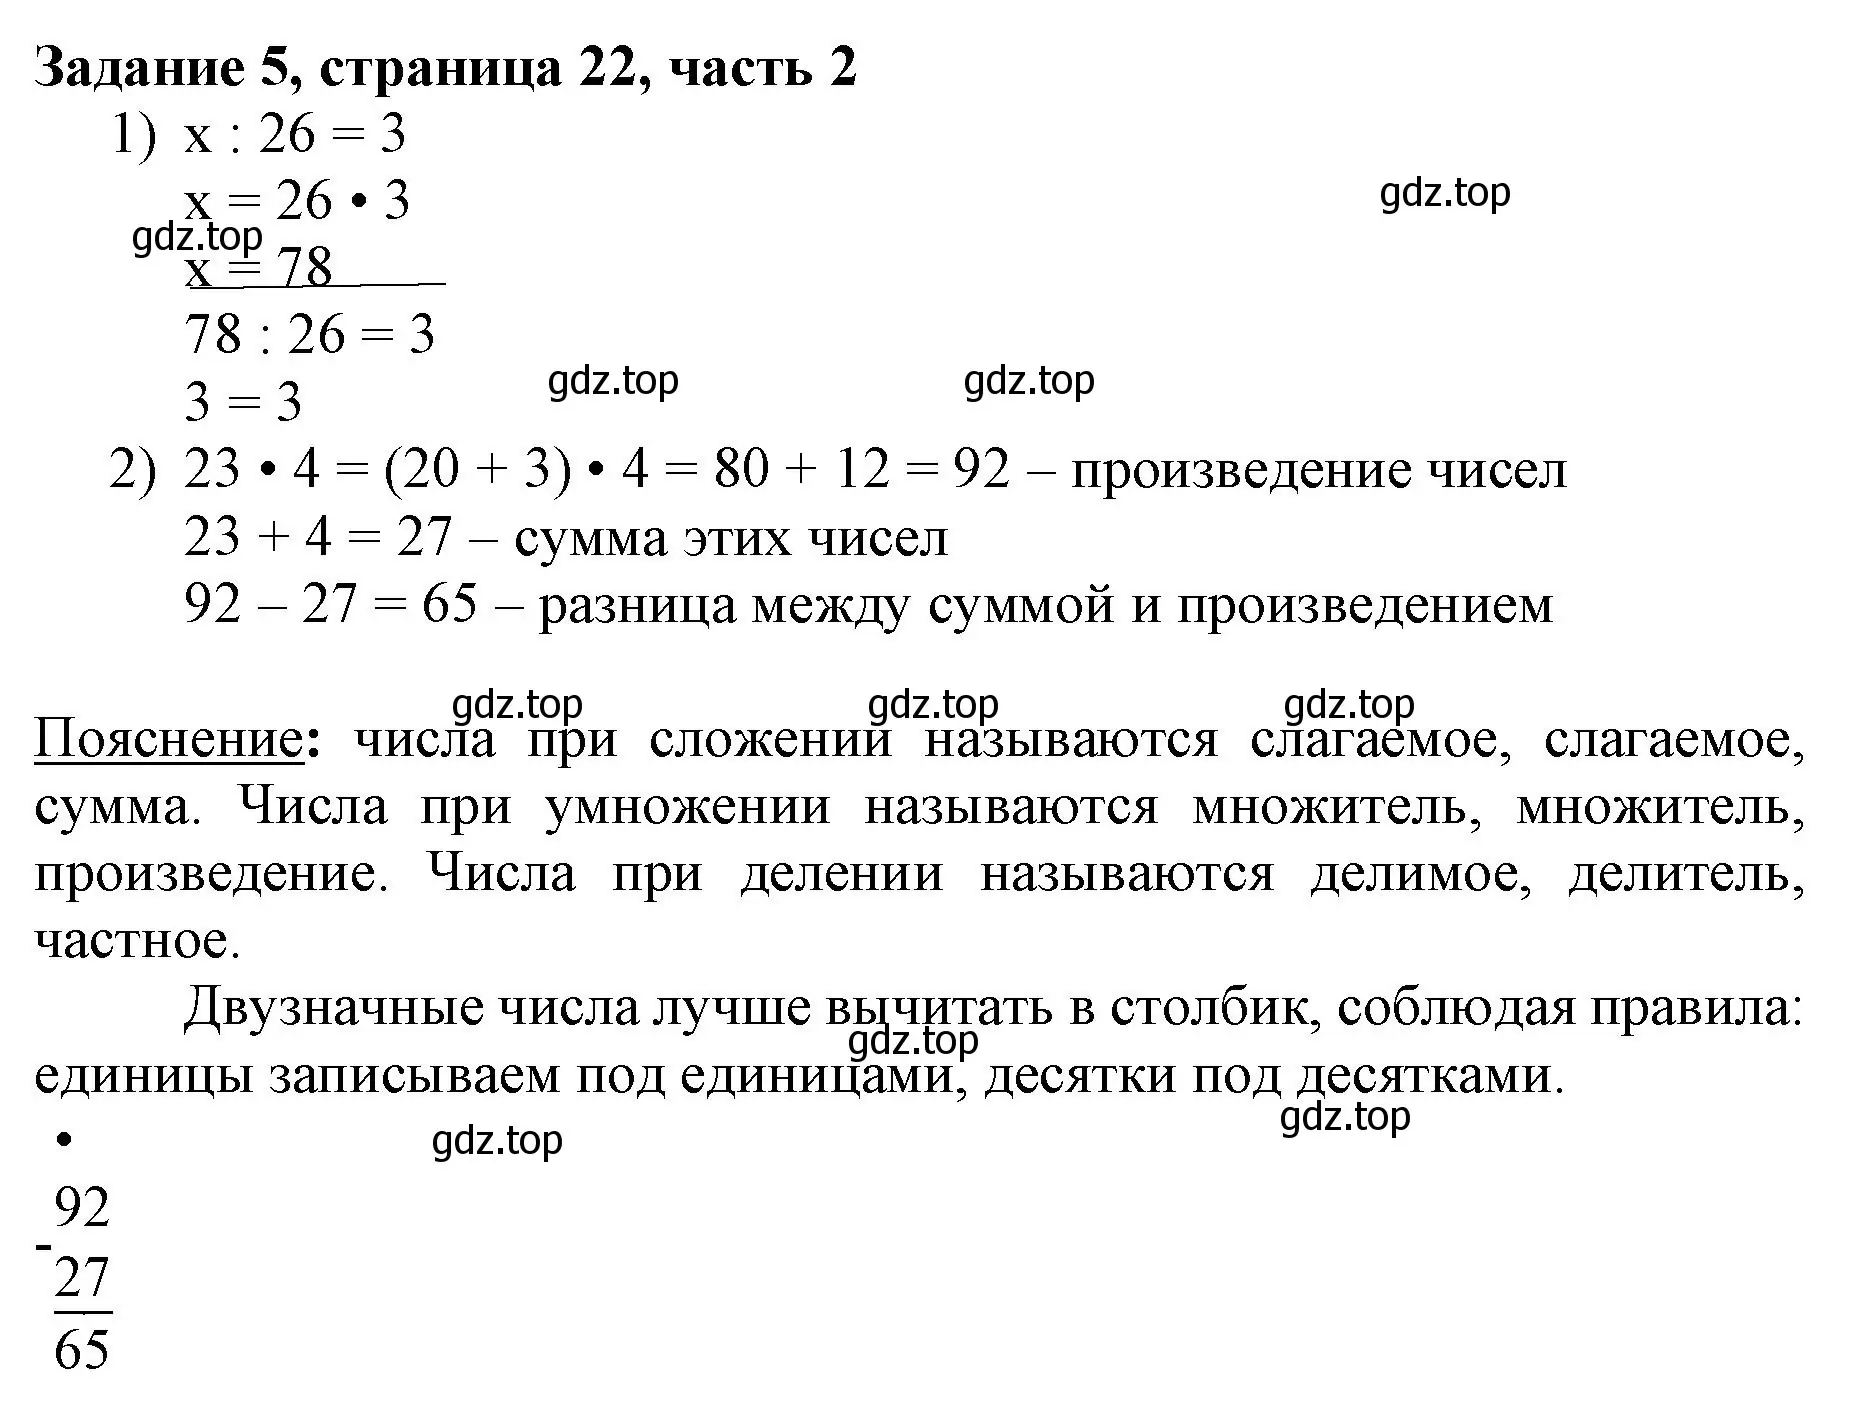 Решение номер 5 (страница 22) гдз по математике 3 класс Моро, Бантова, учебник 2 часть